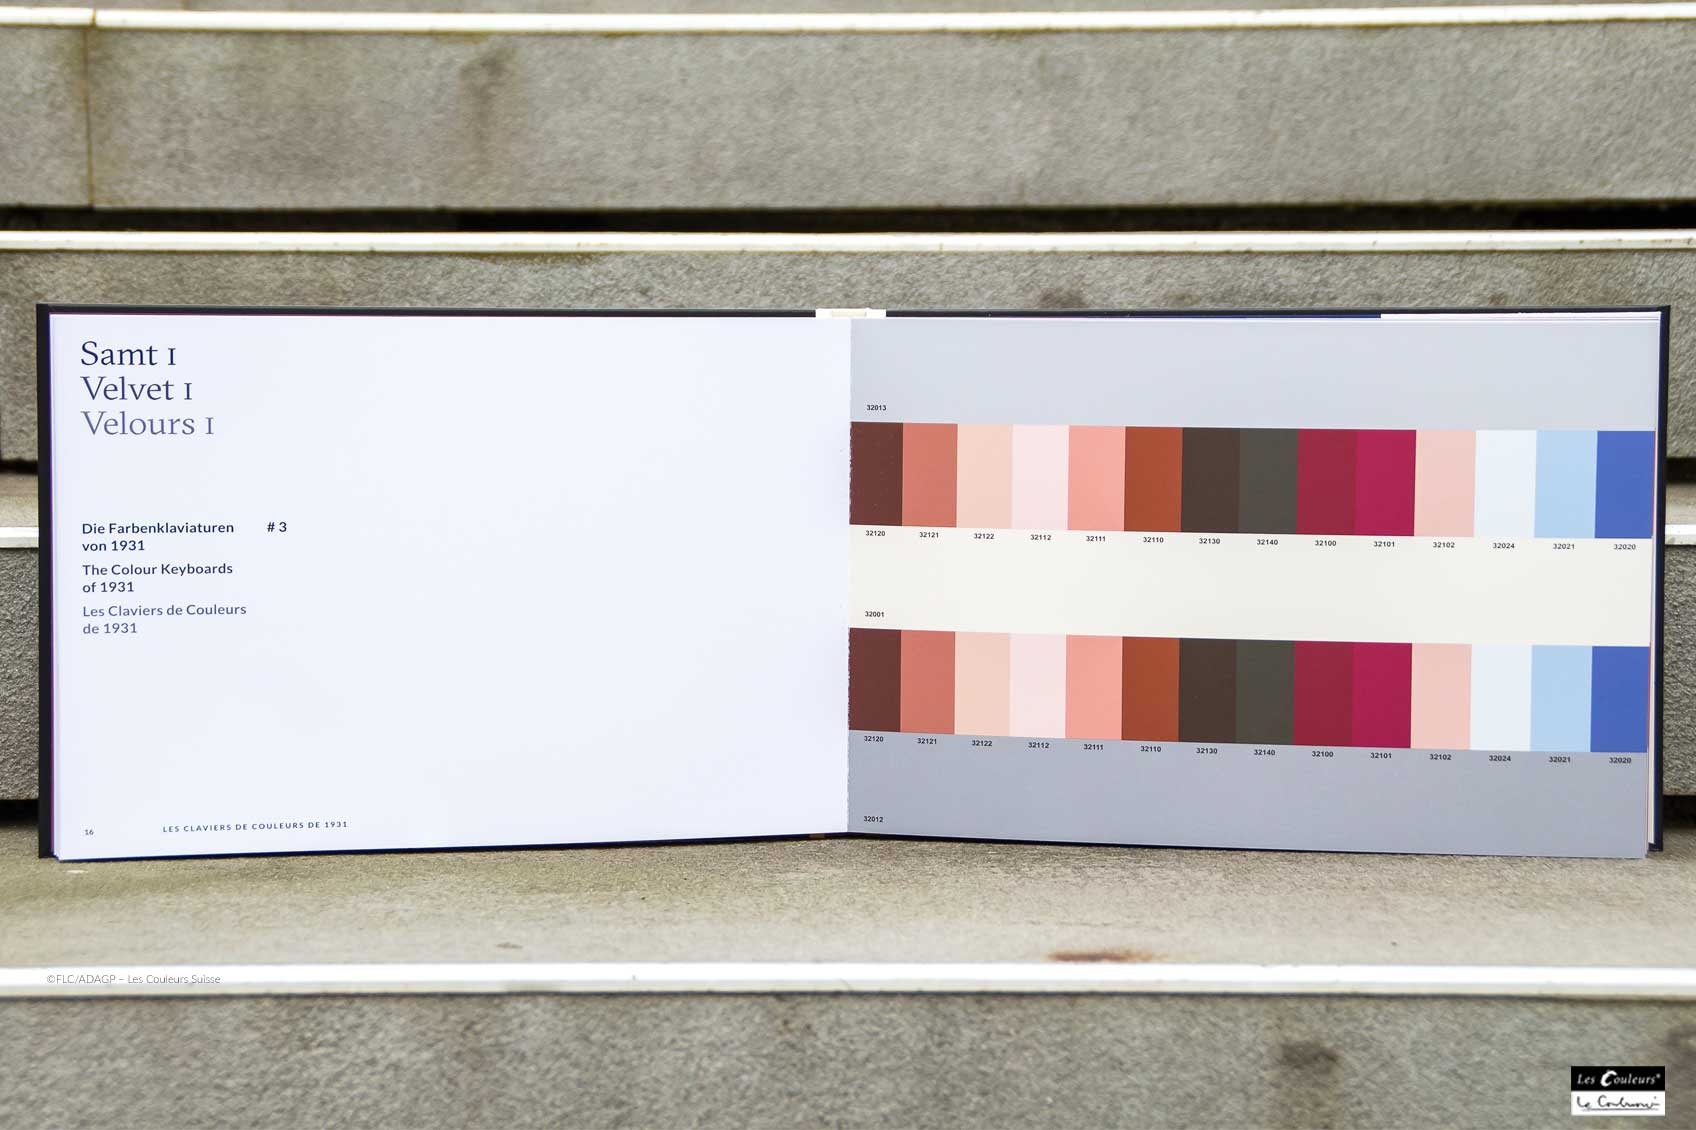 colour keyboard Le Corbusier mood velvet ©FLC/ADAGP – Les Couleurs Suisse